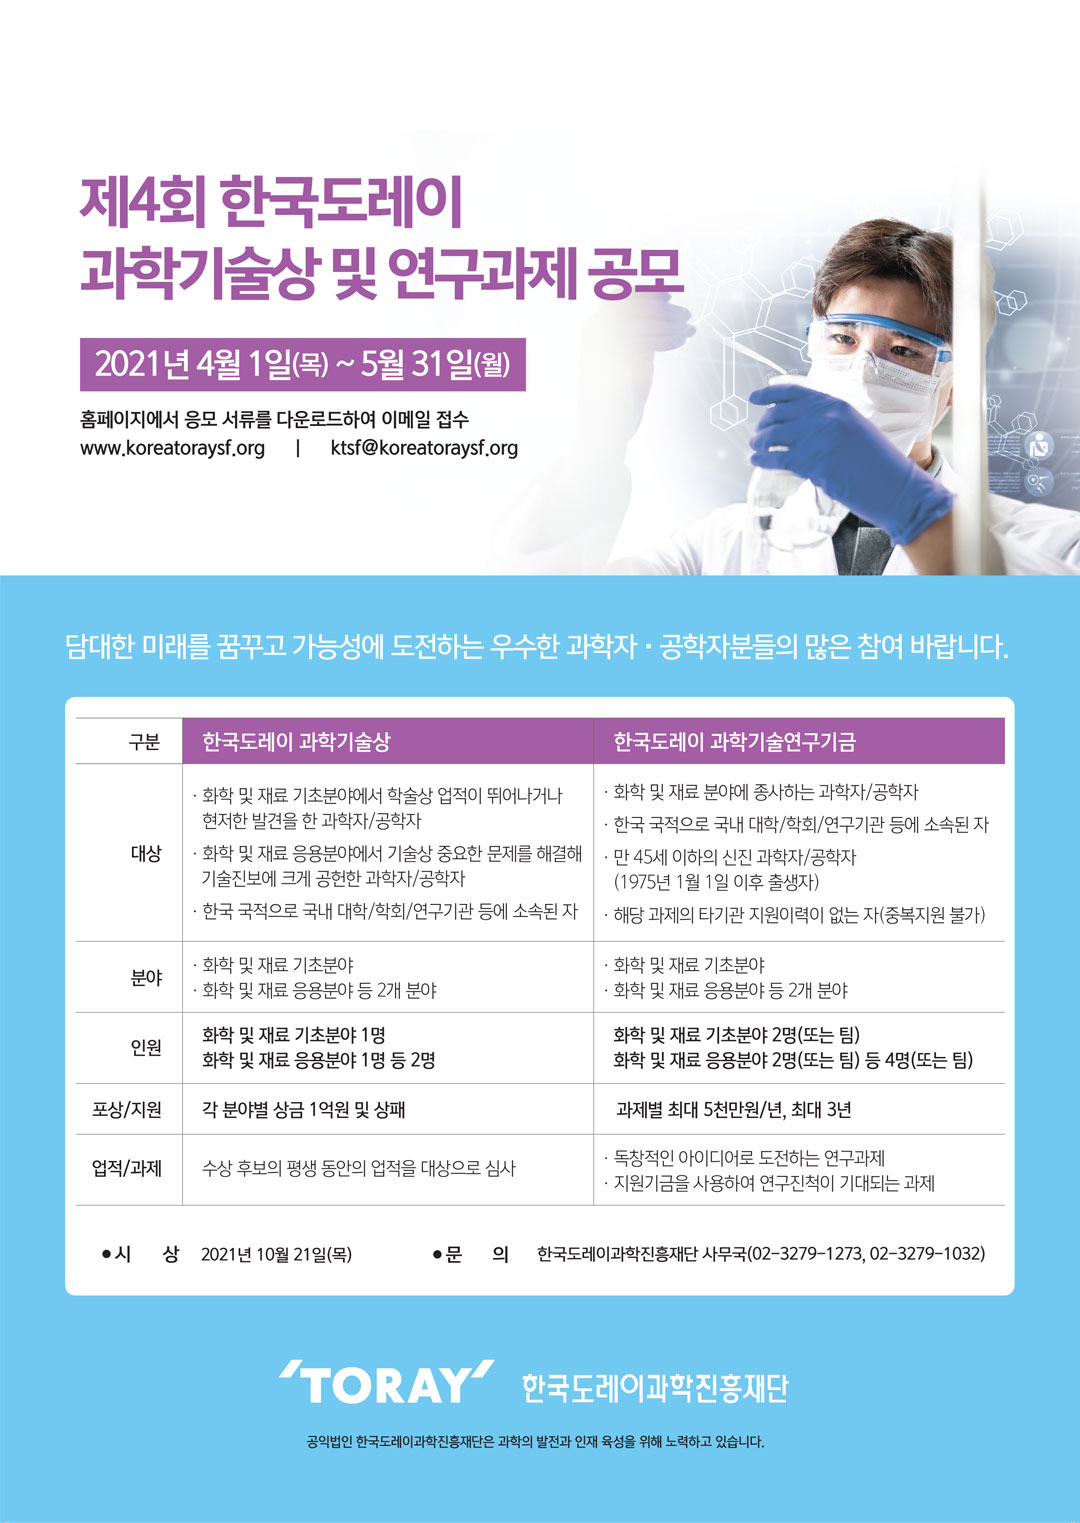 한국도레이과학진흥재단 제4회 과학기술상 및 연구과제 공모